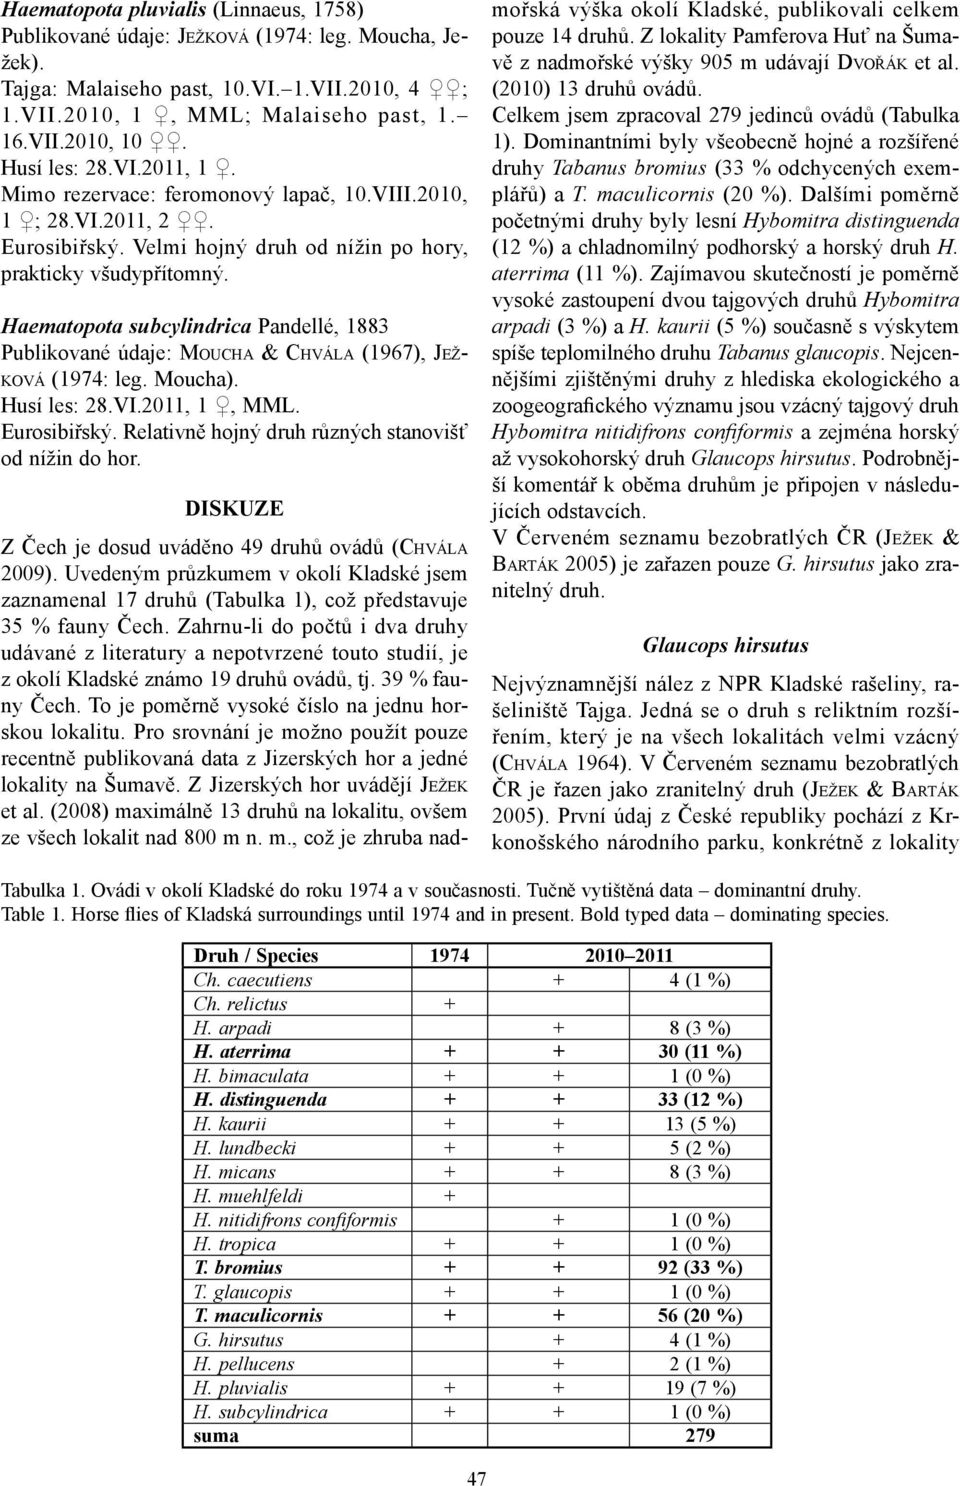 Haematopota subcylindrica Pandellé, 1883 Publikované údaje: MOUCHA & CHVÁLA (1967), JEŽ- Husí les: 28.VI.2011, 1, MML. Eurosibiřský. Relativně hojný druh různých stanovišť od nížin do hor.